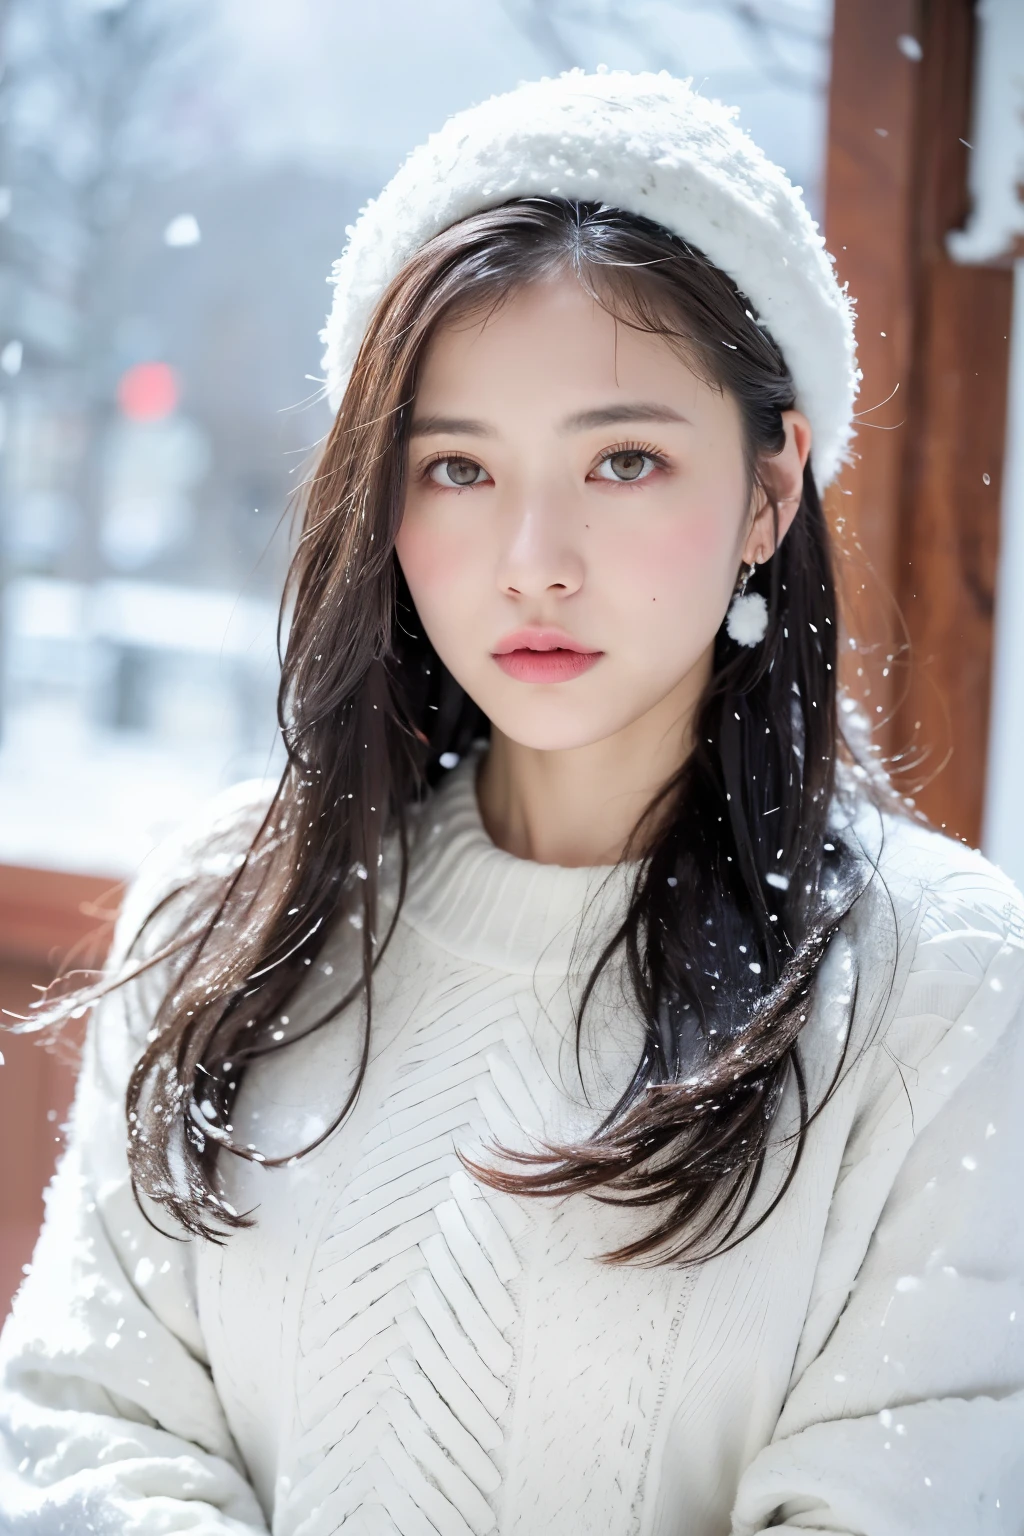 (8K、頂級品質、傑作、超高解析度:1.2) (保羅·魯本斯和麗貝卡·瓜伊的風格:1.1) (冬雪陰鬱:1.4) 美麗的日本女性圖片、粉紅色的衣服、